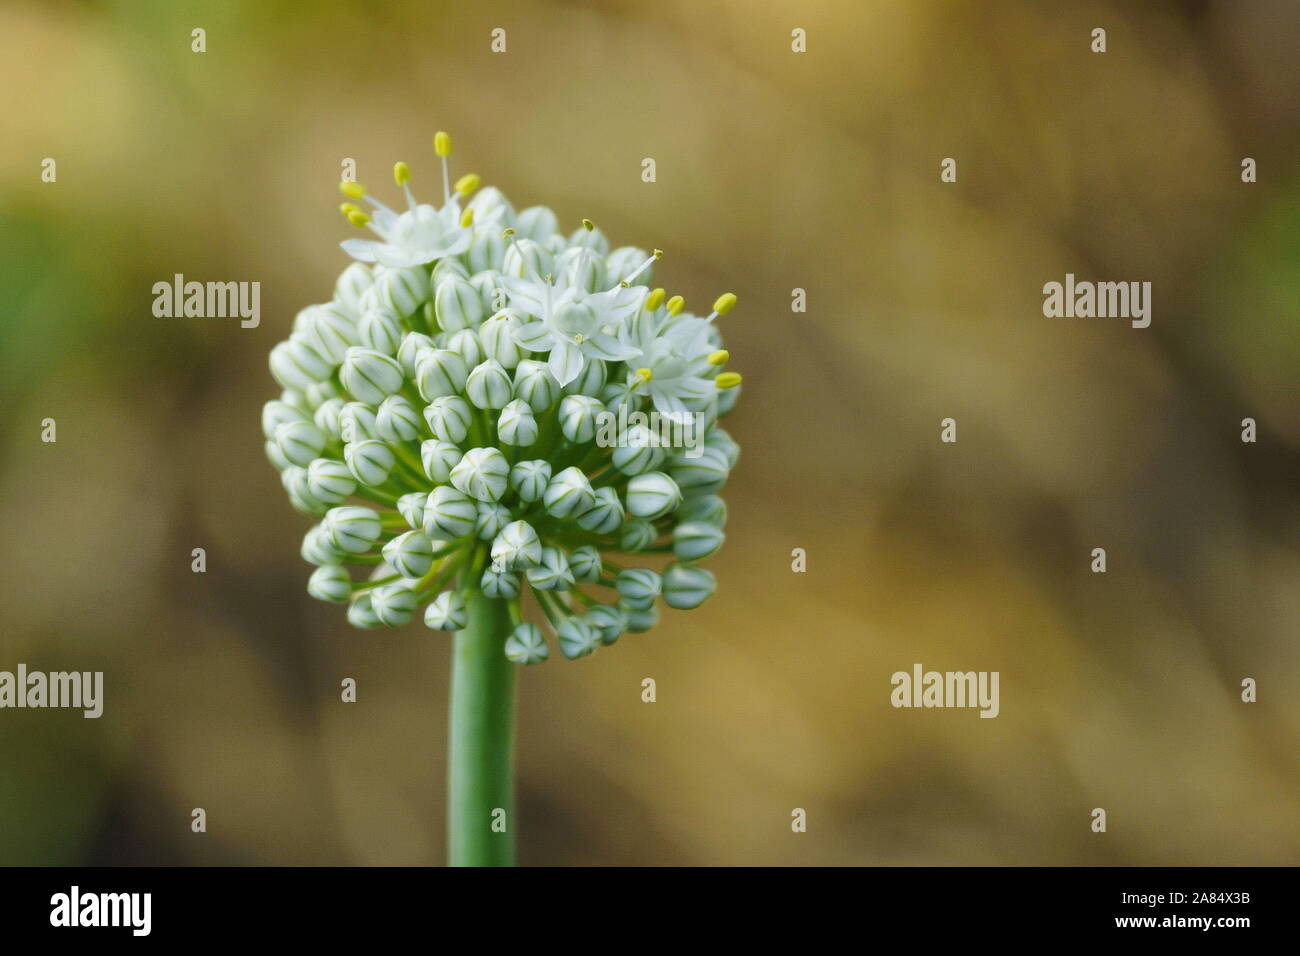 Eine Blume von Knoblauch Blüten Nahaufnahme Eurasischen wild Zwiebel  Stockfotografie - Alamy